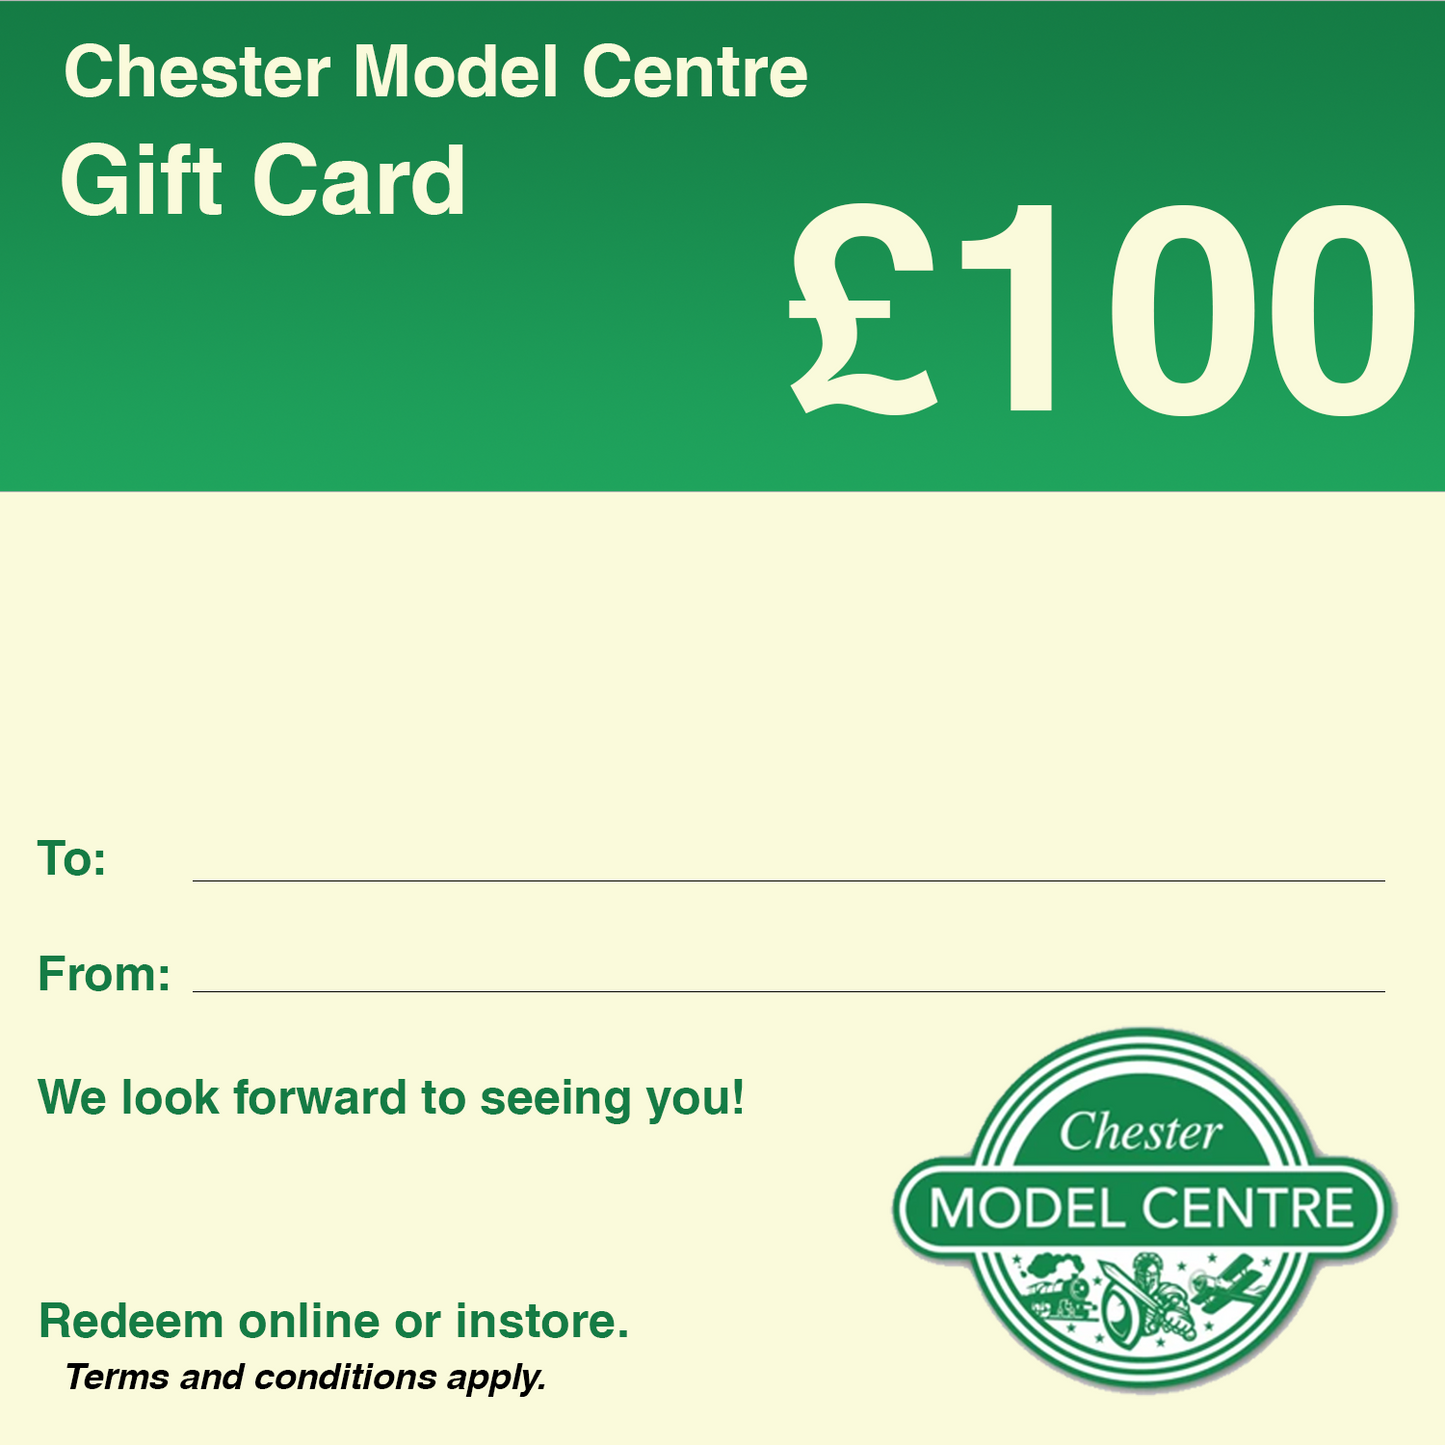 Chester Model Centre Digital Gift Card - Chester Model Centre